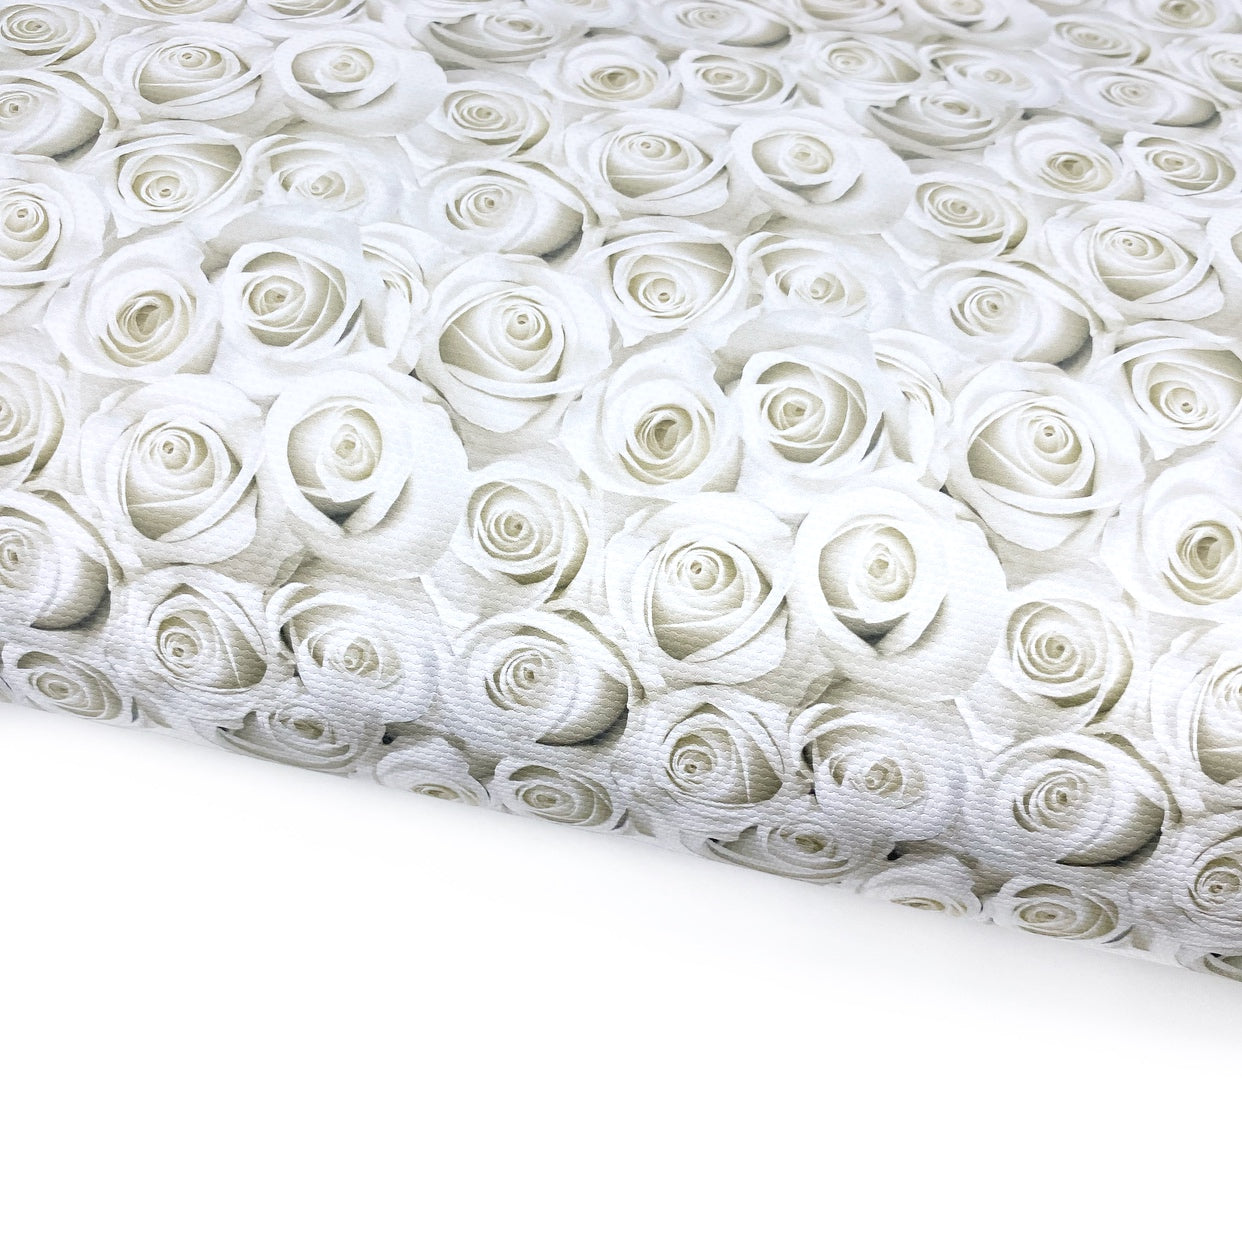 White Roses Lux Premium Printed Bow Fabric